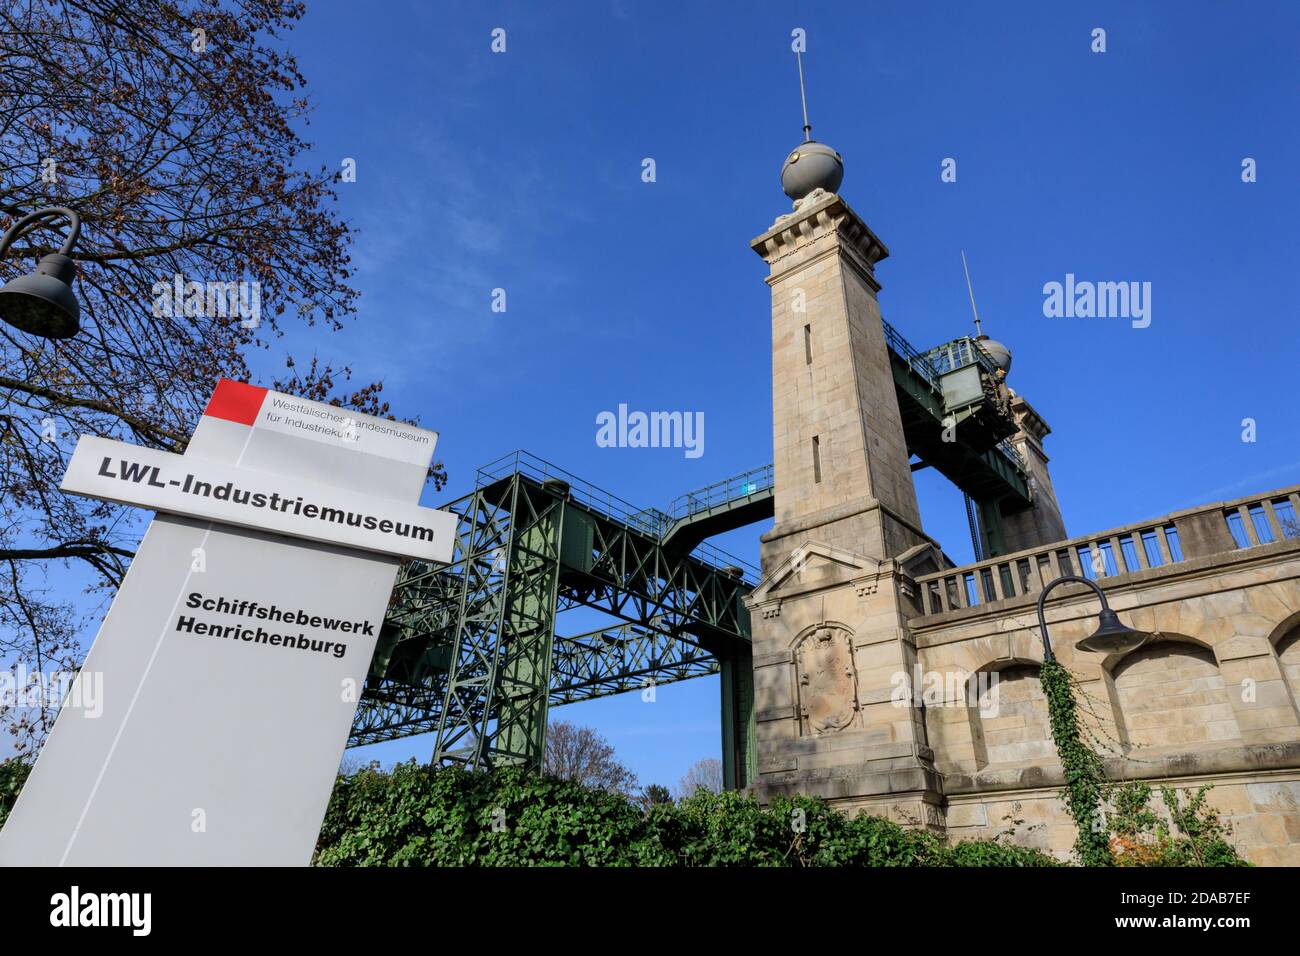 Hérichenburg, site du patrimoine industriel par le canal EMS de Dortmund, Rhénanie-du-Nord-Westphalie, Allemagne Banque D'Images